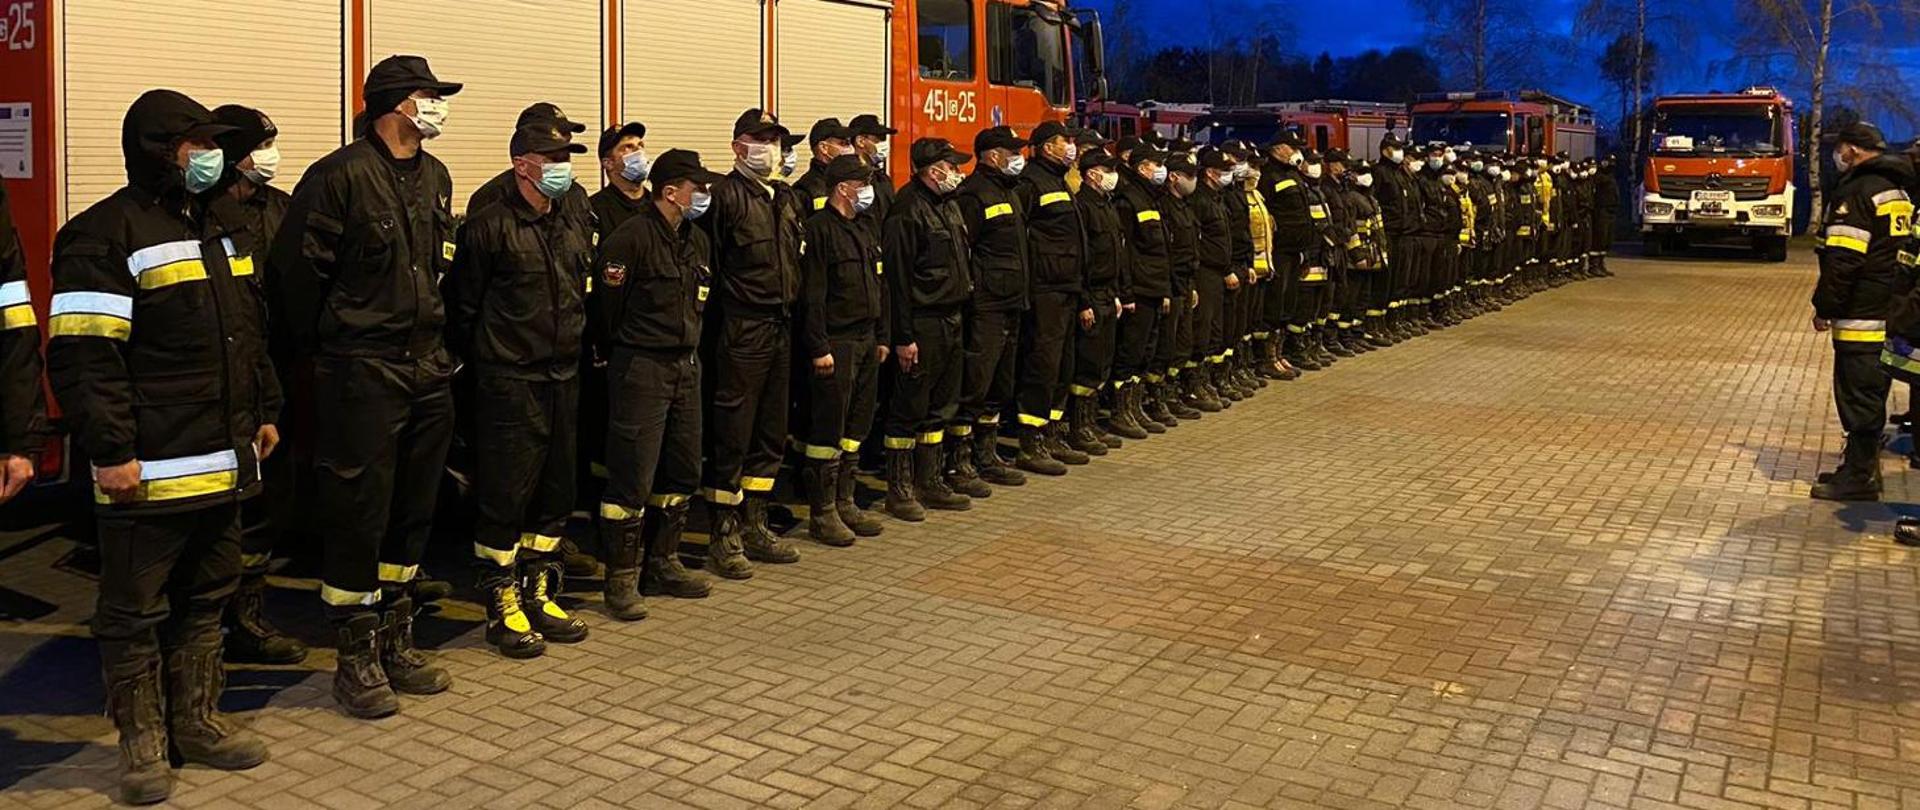 Strażacy podczas zbiórki wieczorową porą , stoją w dwuszeregu ubrani w maseczki ochronne 